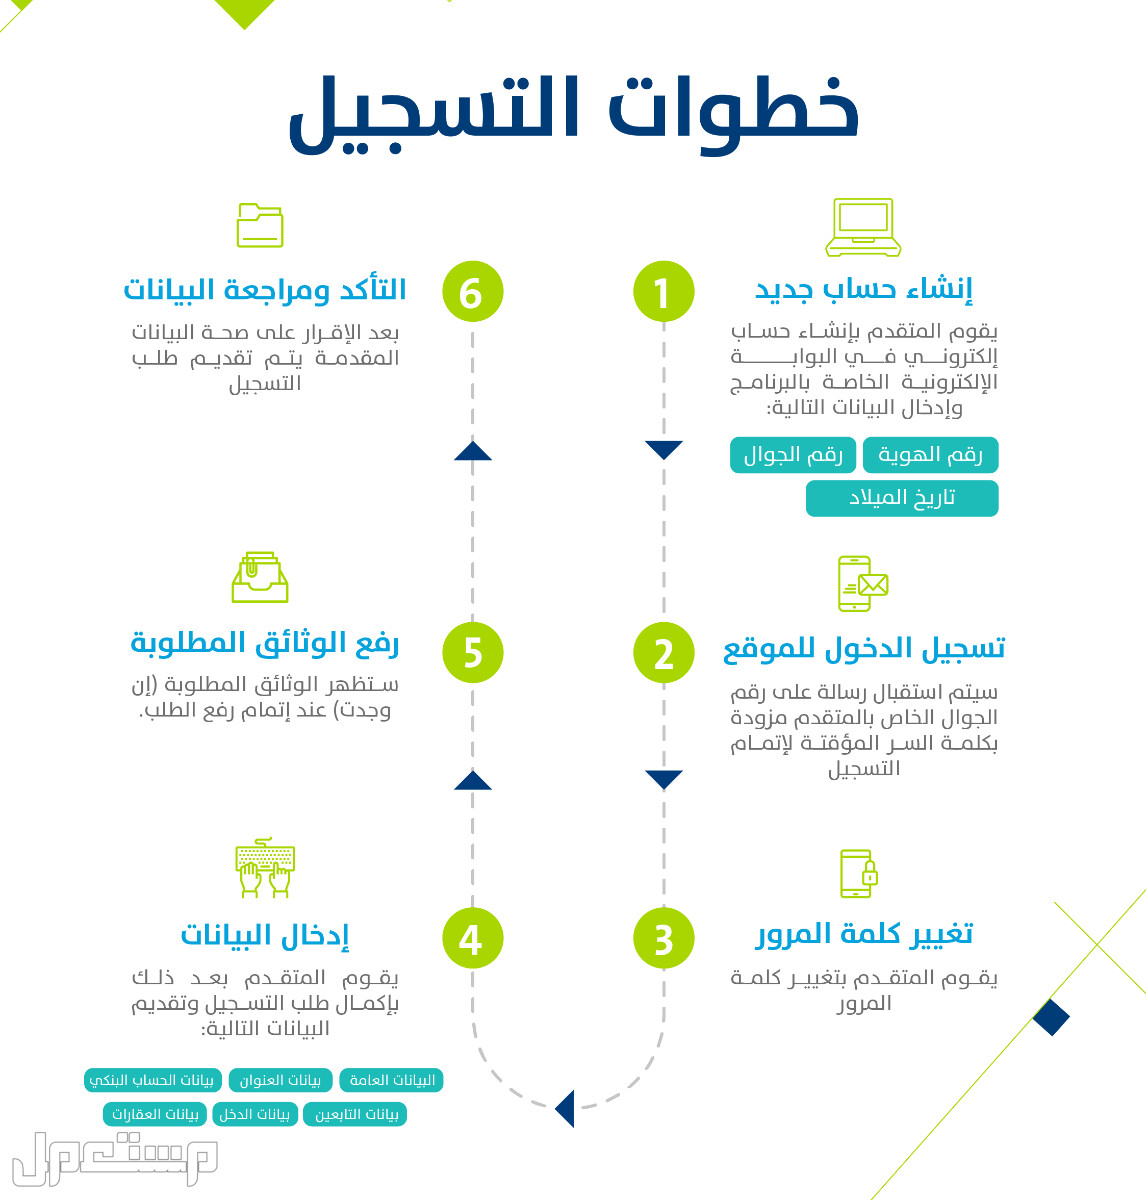 تعرف على كيفية التسجيل في حساب المواطن عقب تمديد الدعم الإضافي 1444 بالخطوات في قطر خطوات التسجيل